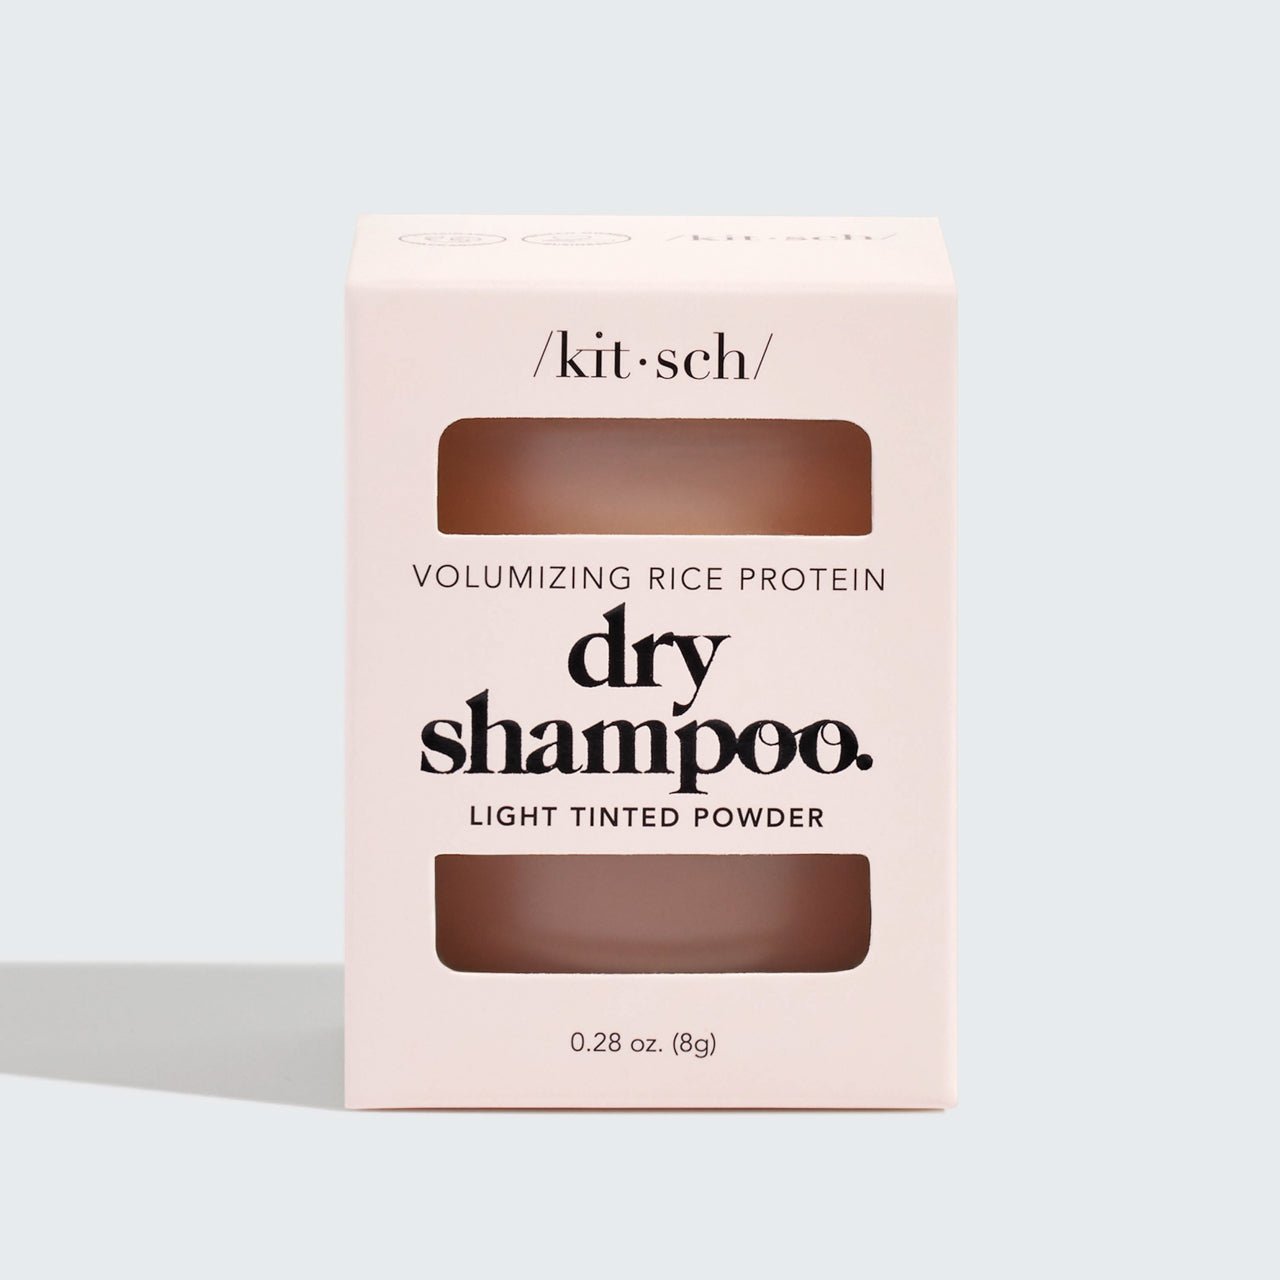 Volumizing Rice Protein Dry Shampoo - Licht getint poeder